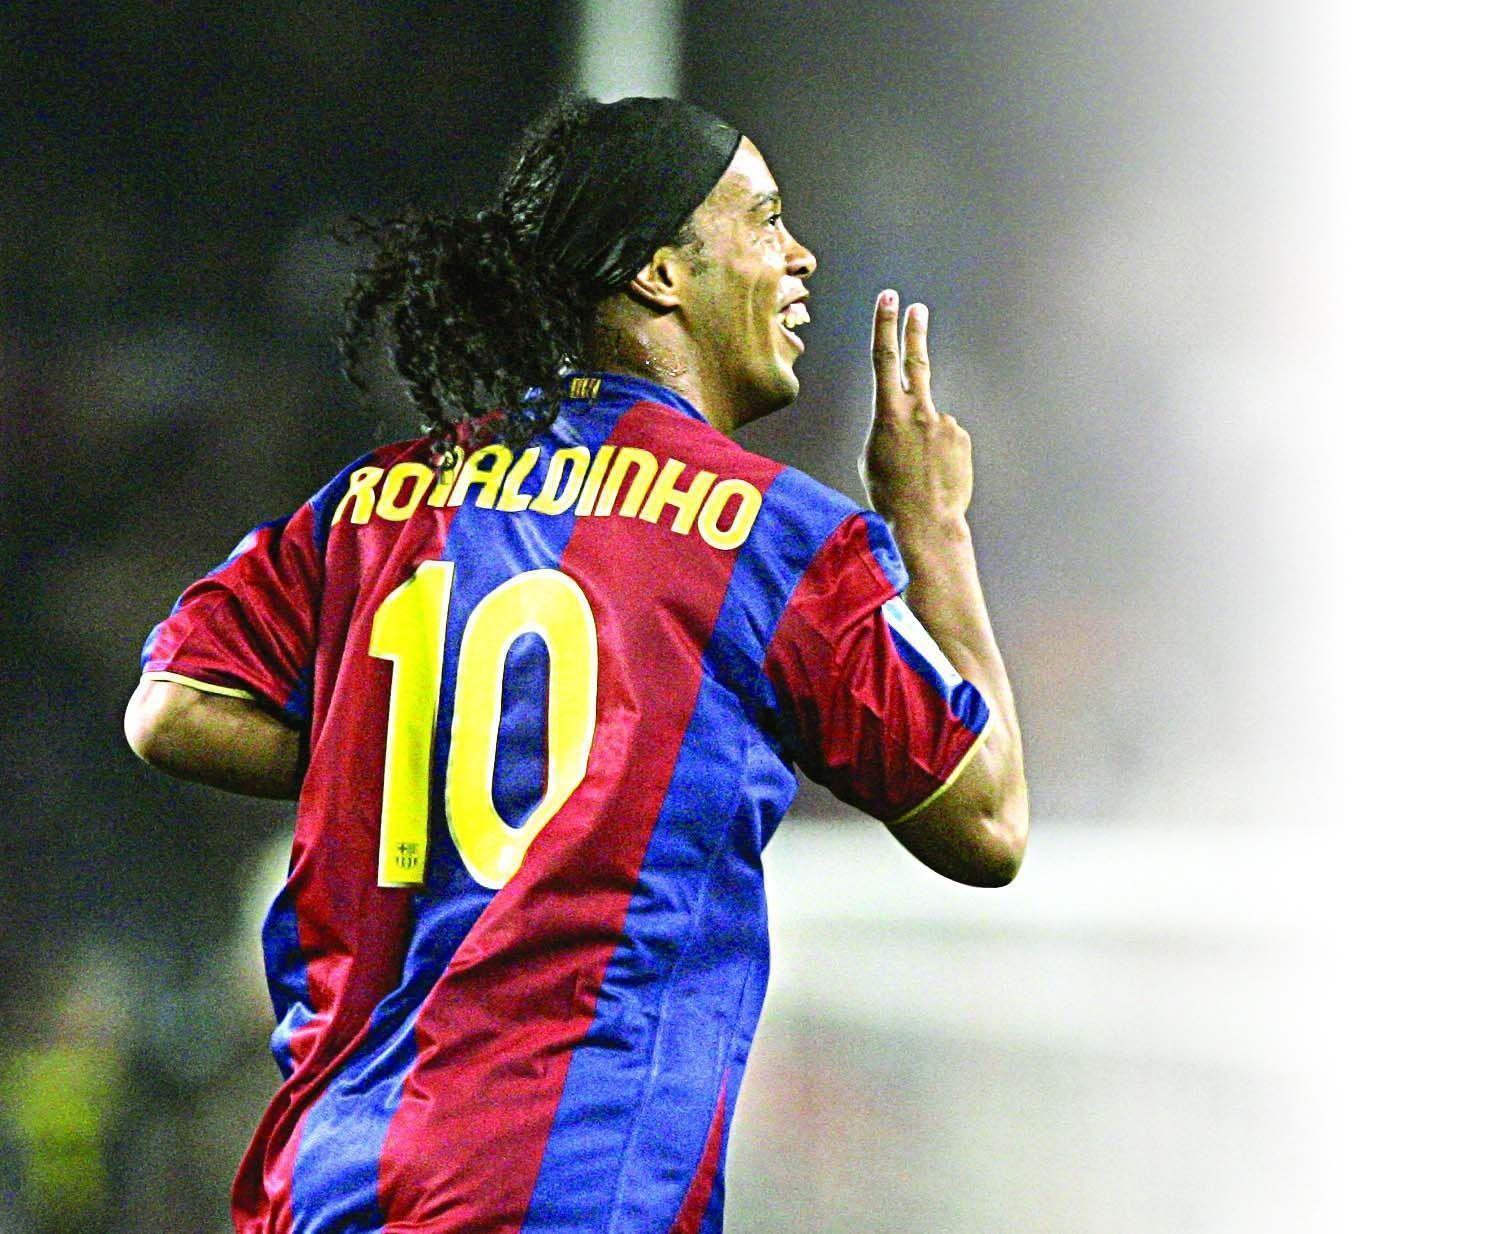 Ronaldinho wallpaper.jpg